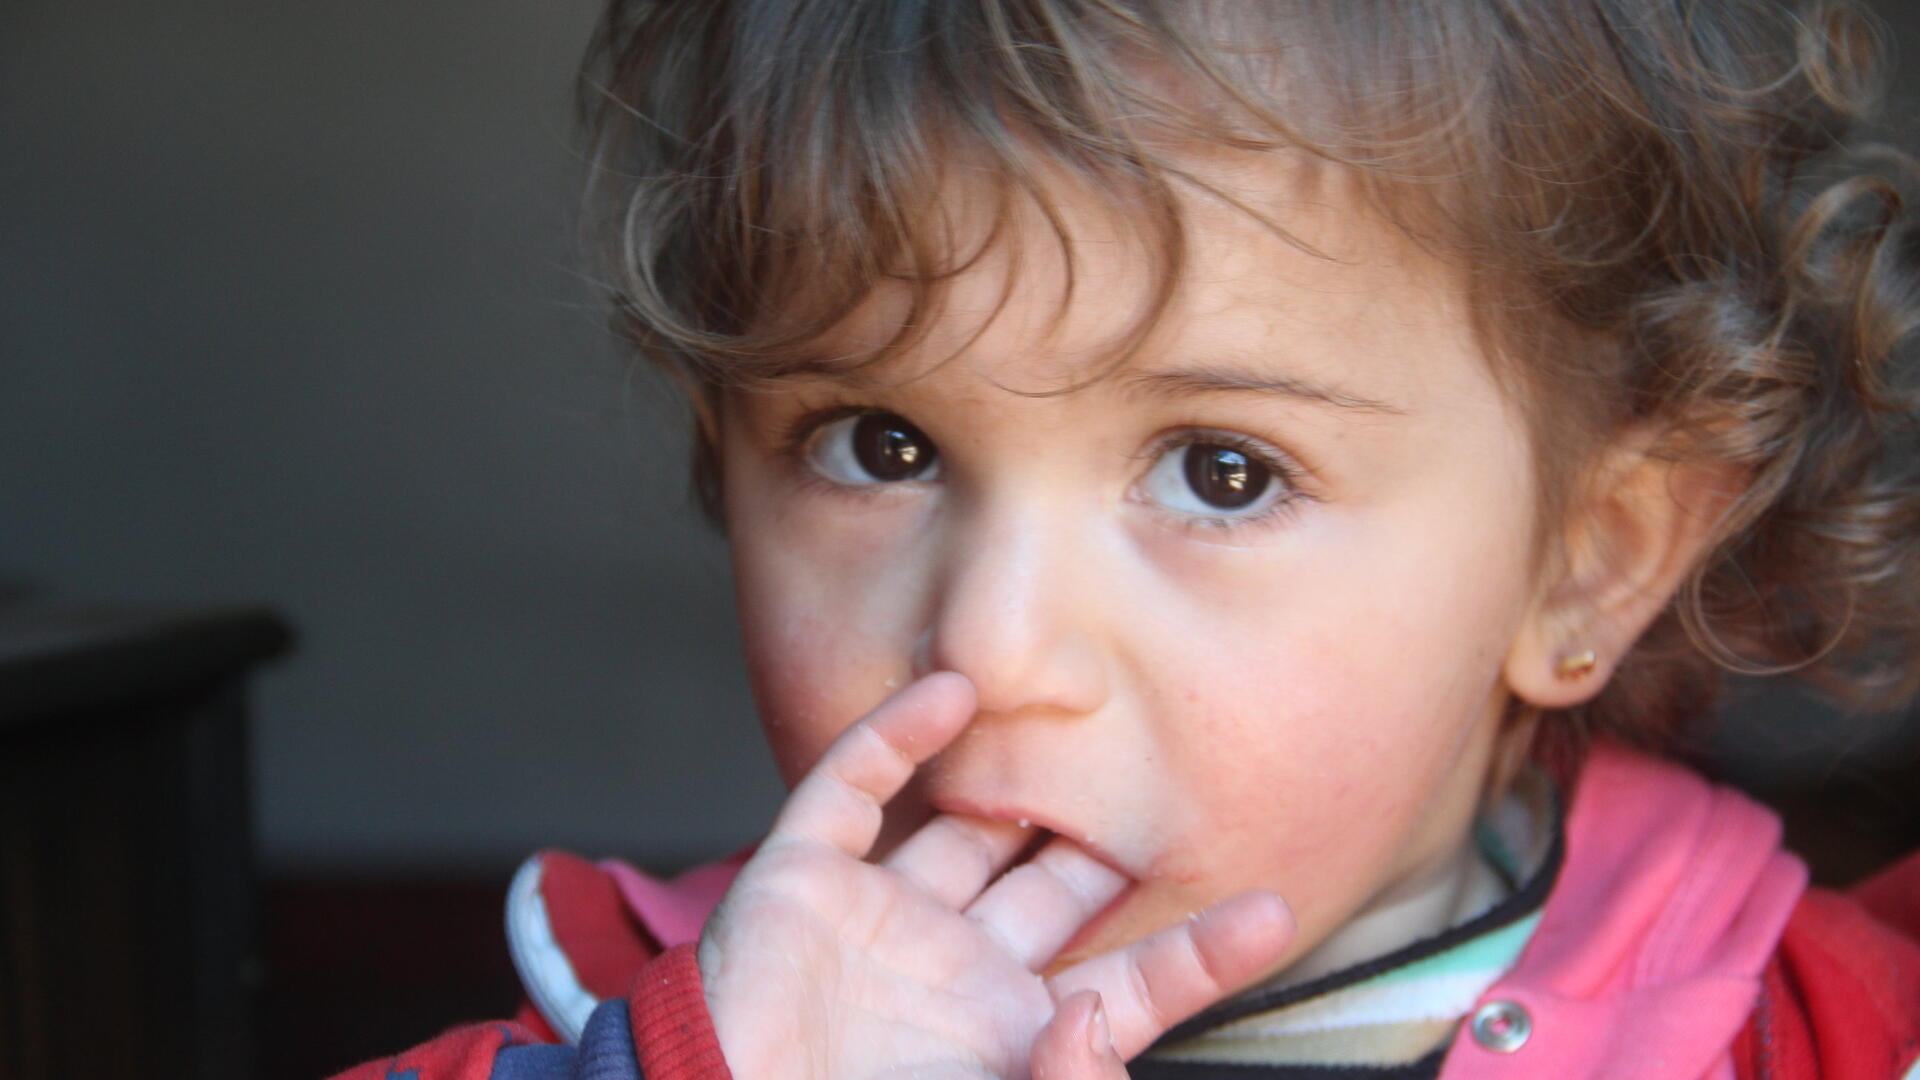 A Syrian girl in Dana, Idlib